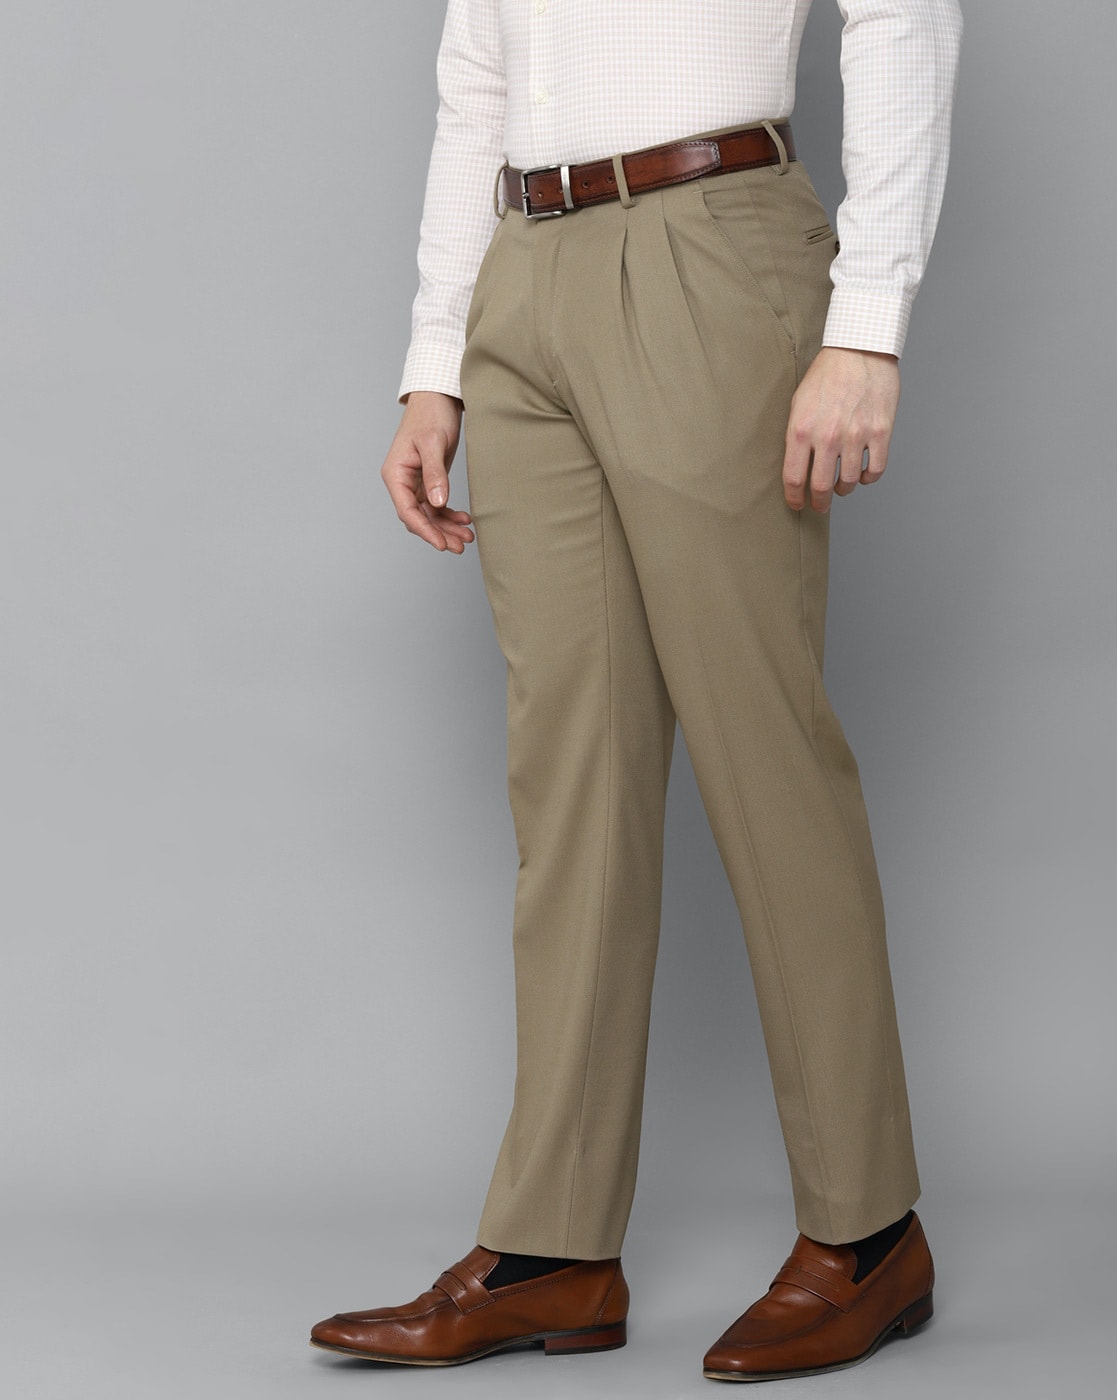 Pleated Trousers Men  Buy Pleated Trousers Men online in India